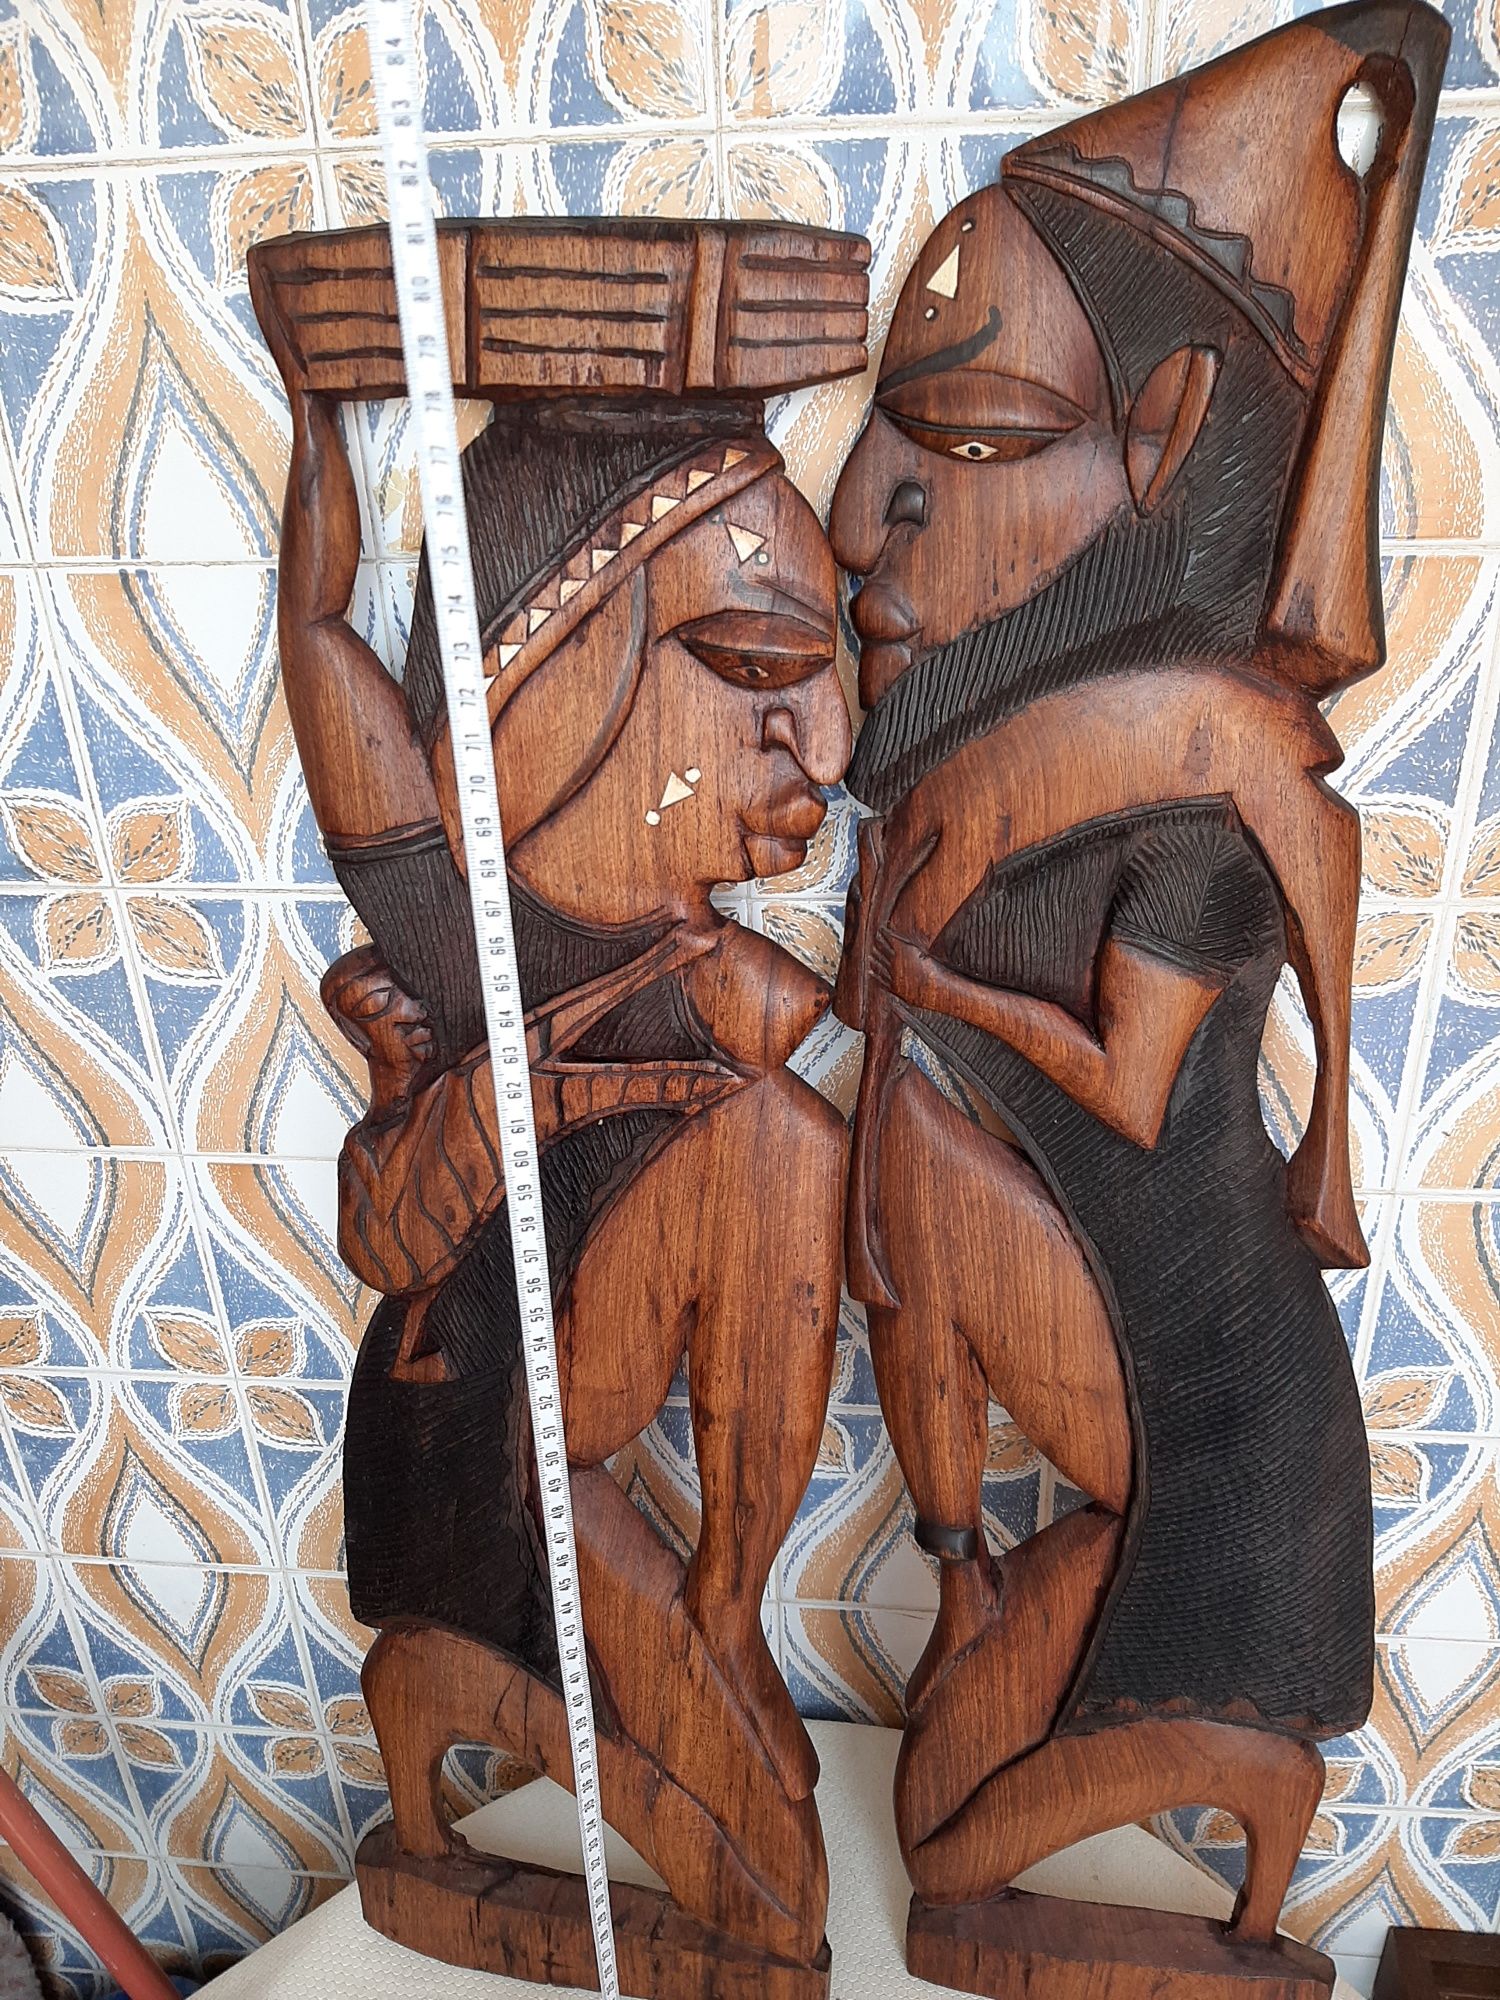 Arte africana em bom estado